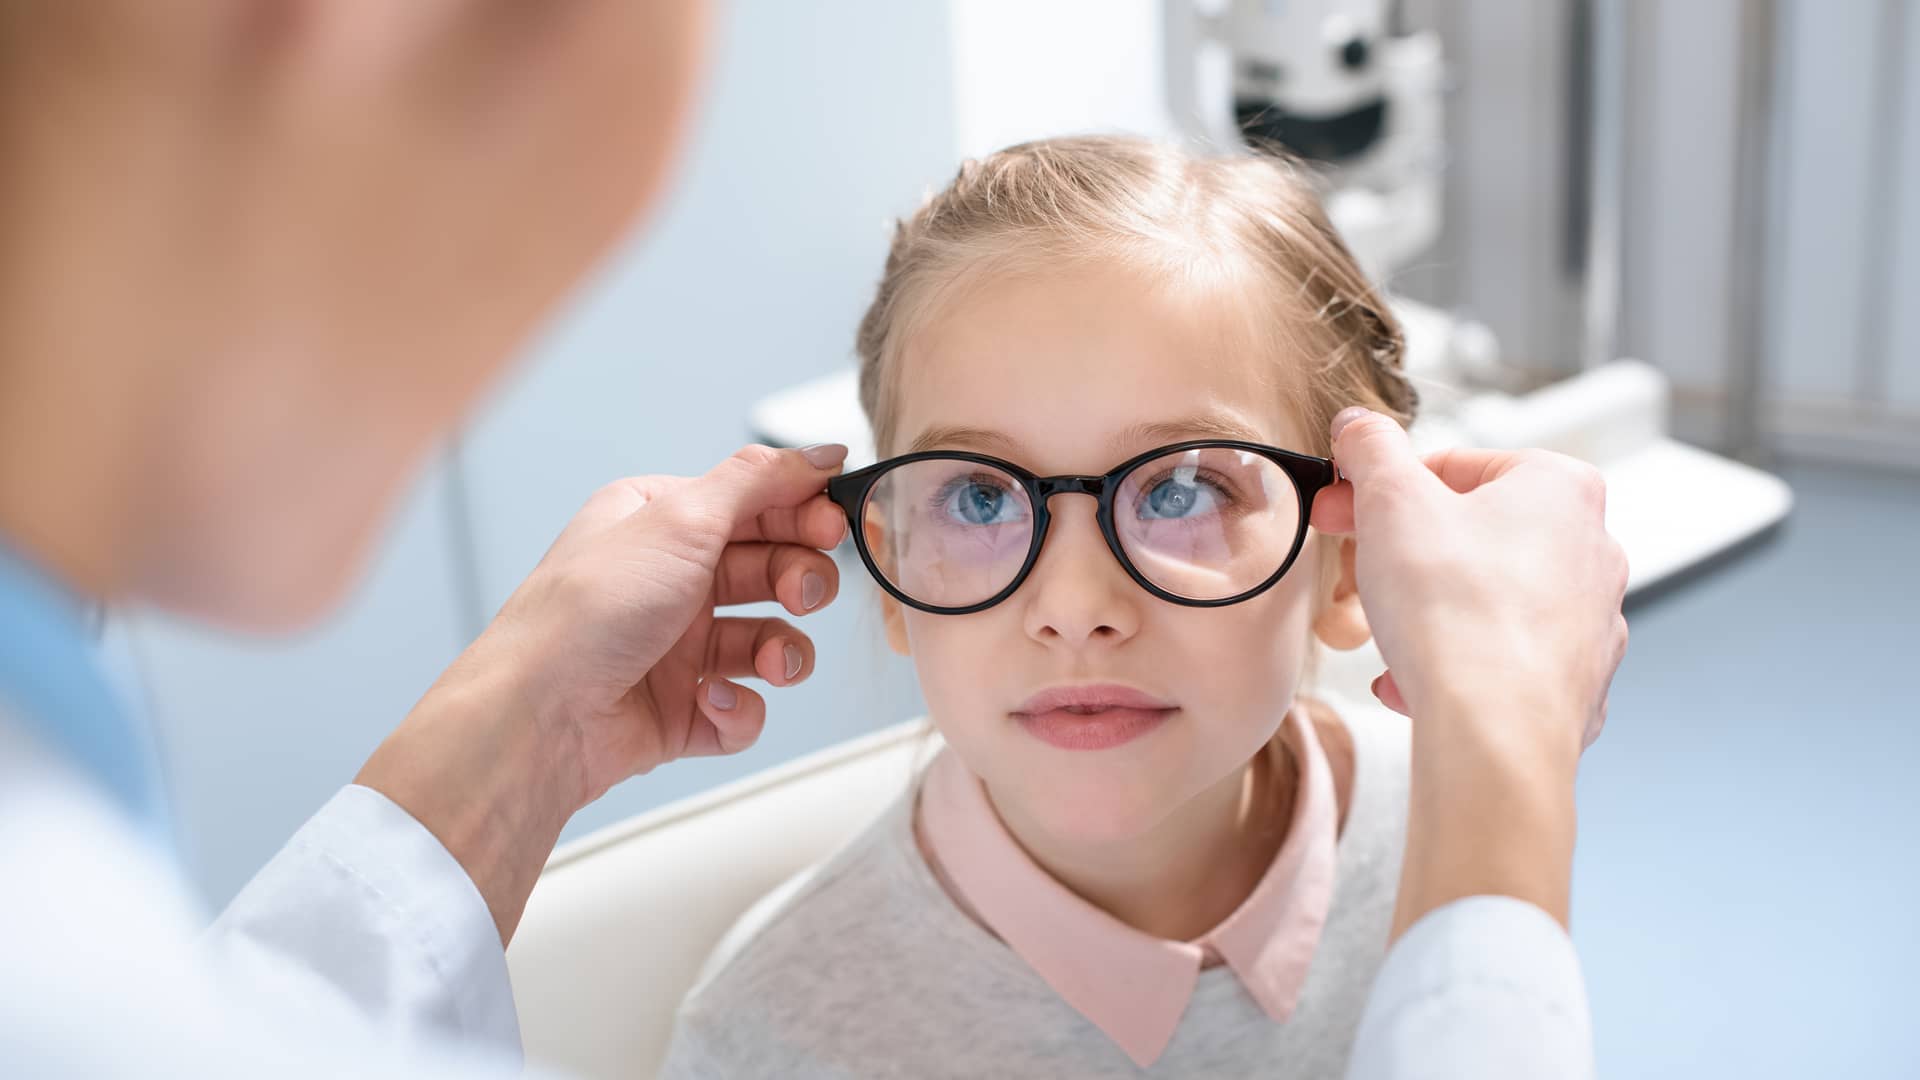 Hipermetropía en niños: a partir de 5 dioptrías necesitan gafas